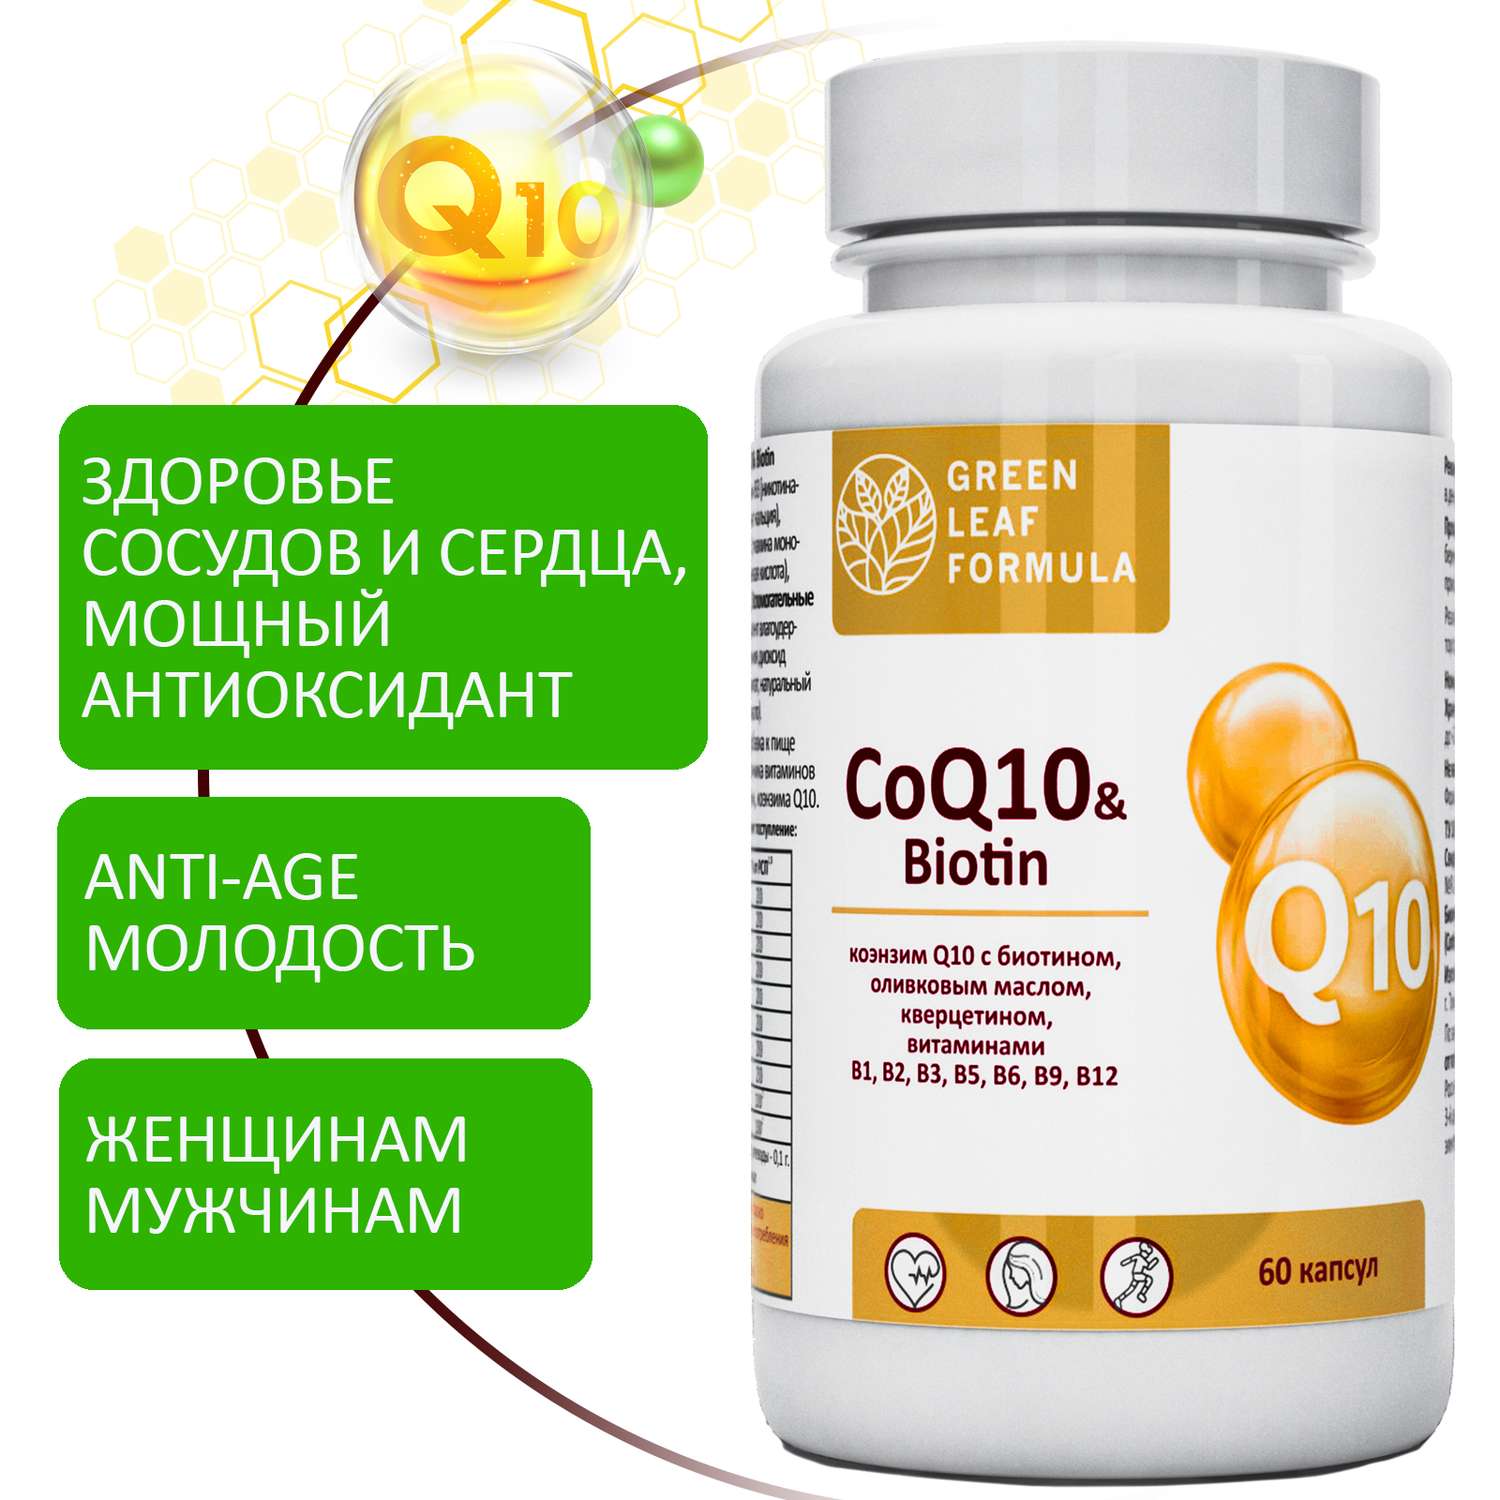 Коэнзим Q10 капсулы с биотином Green Leaf Formula антиоксиданты для сердца и сосудов 790 мг 60 капсул - фото 1